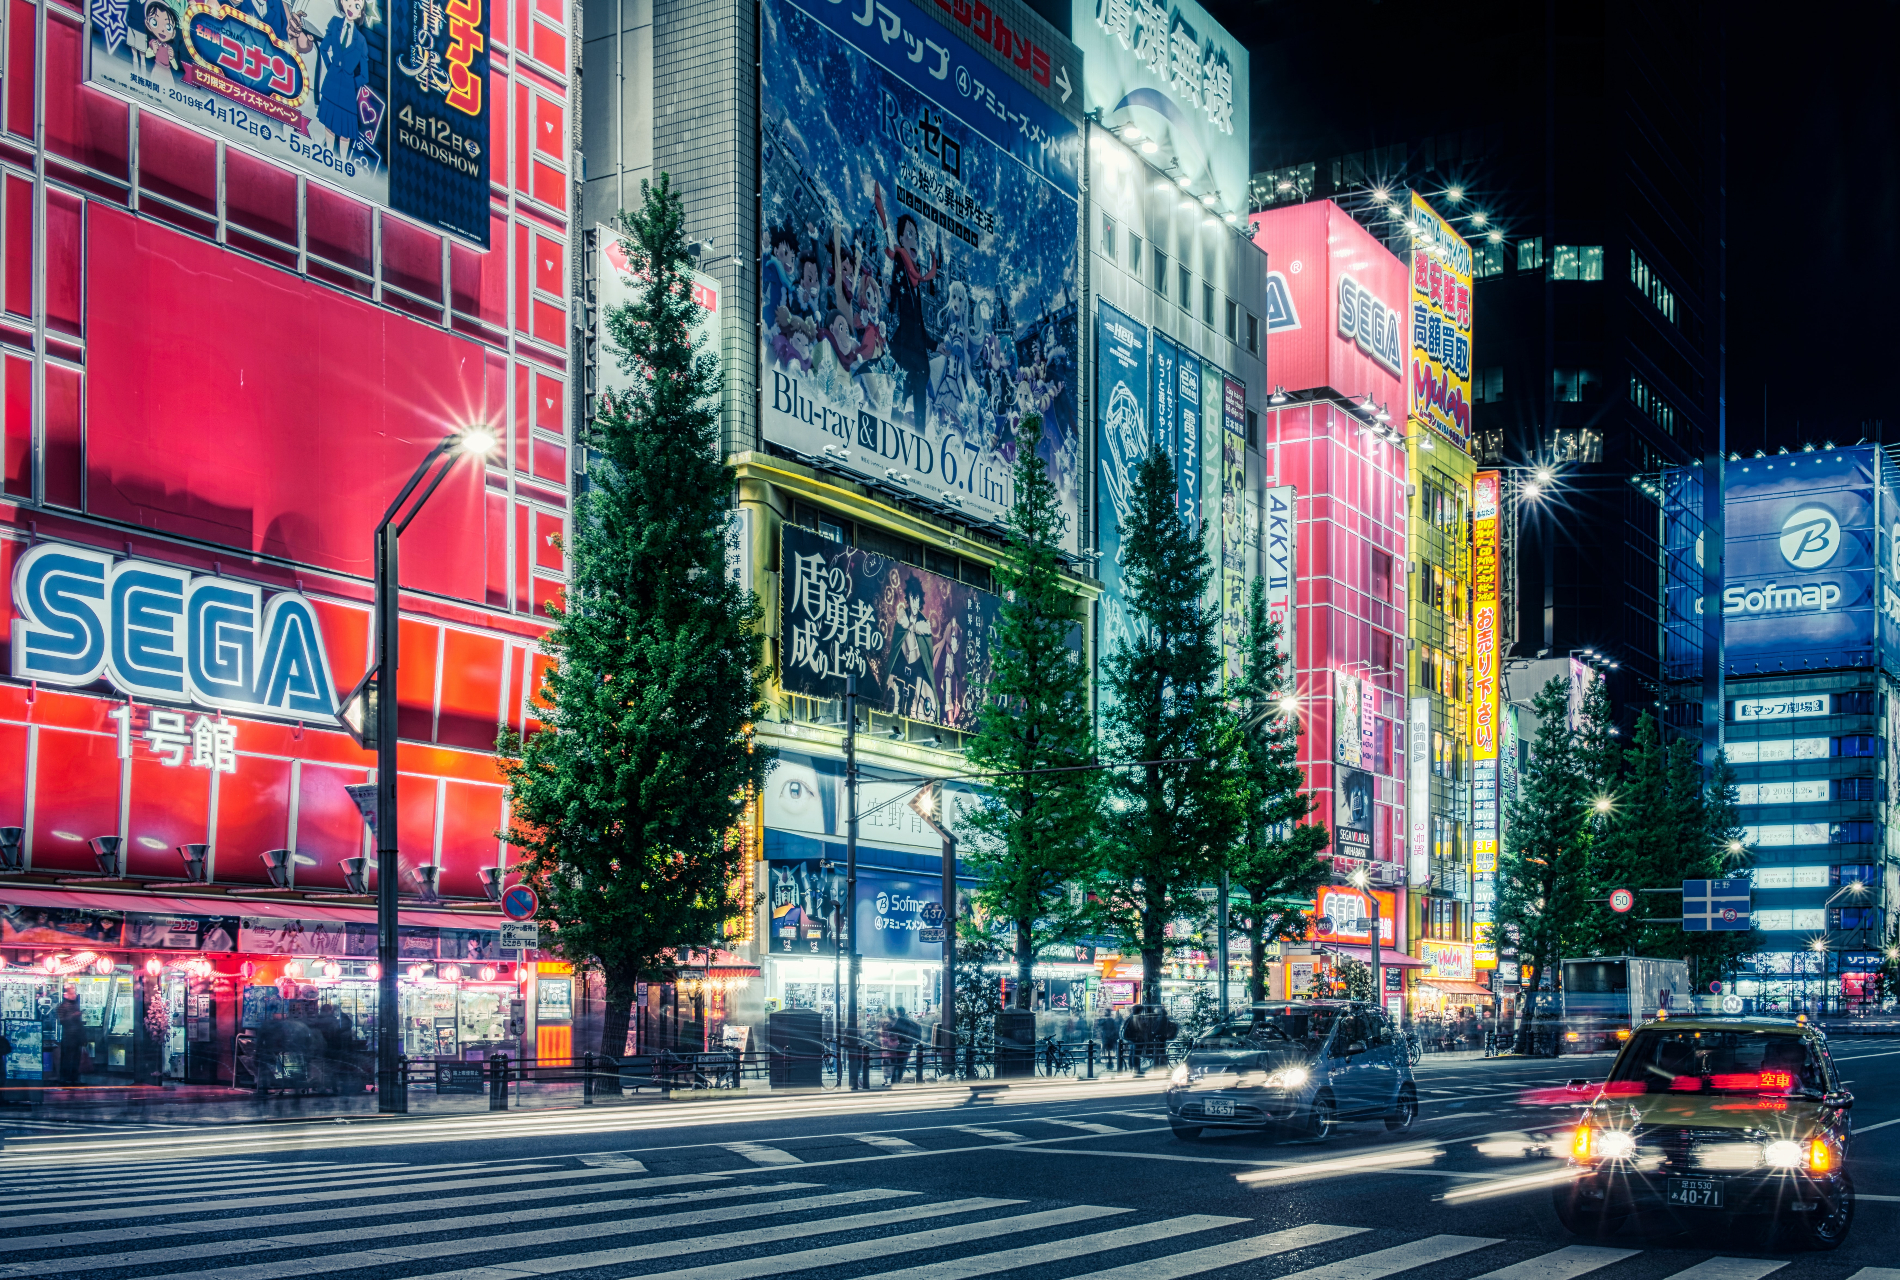 Image of Tokyo at night, Akihabara to be exact